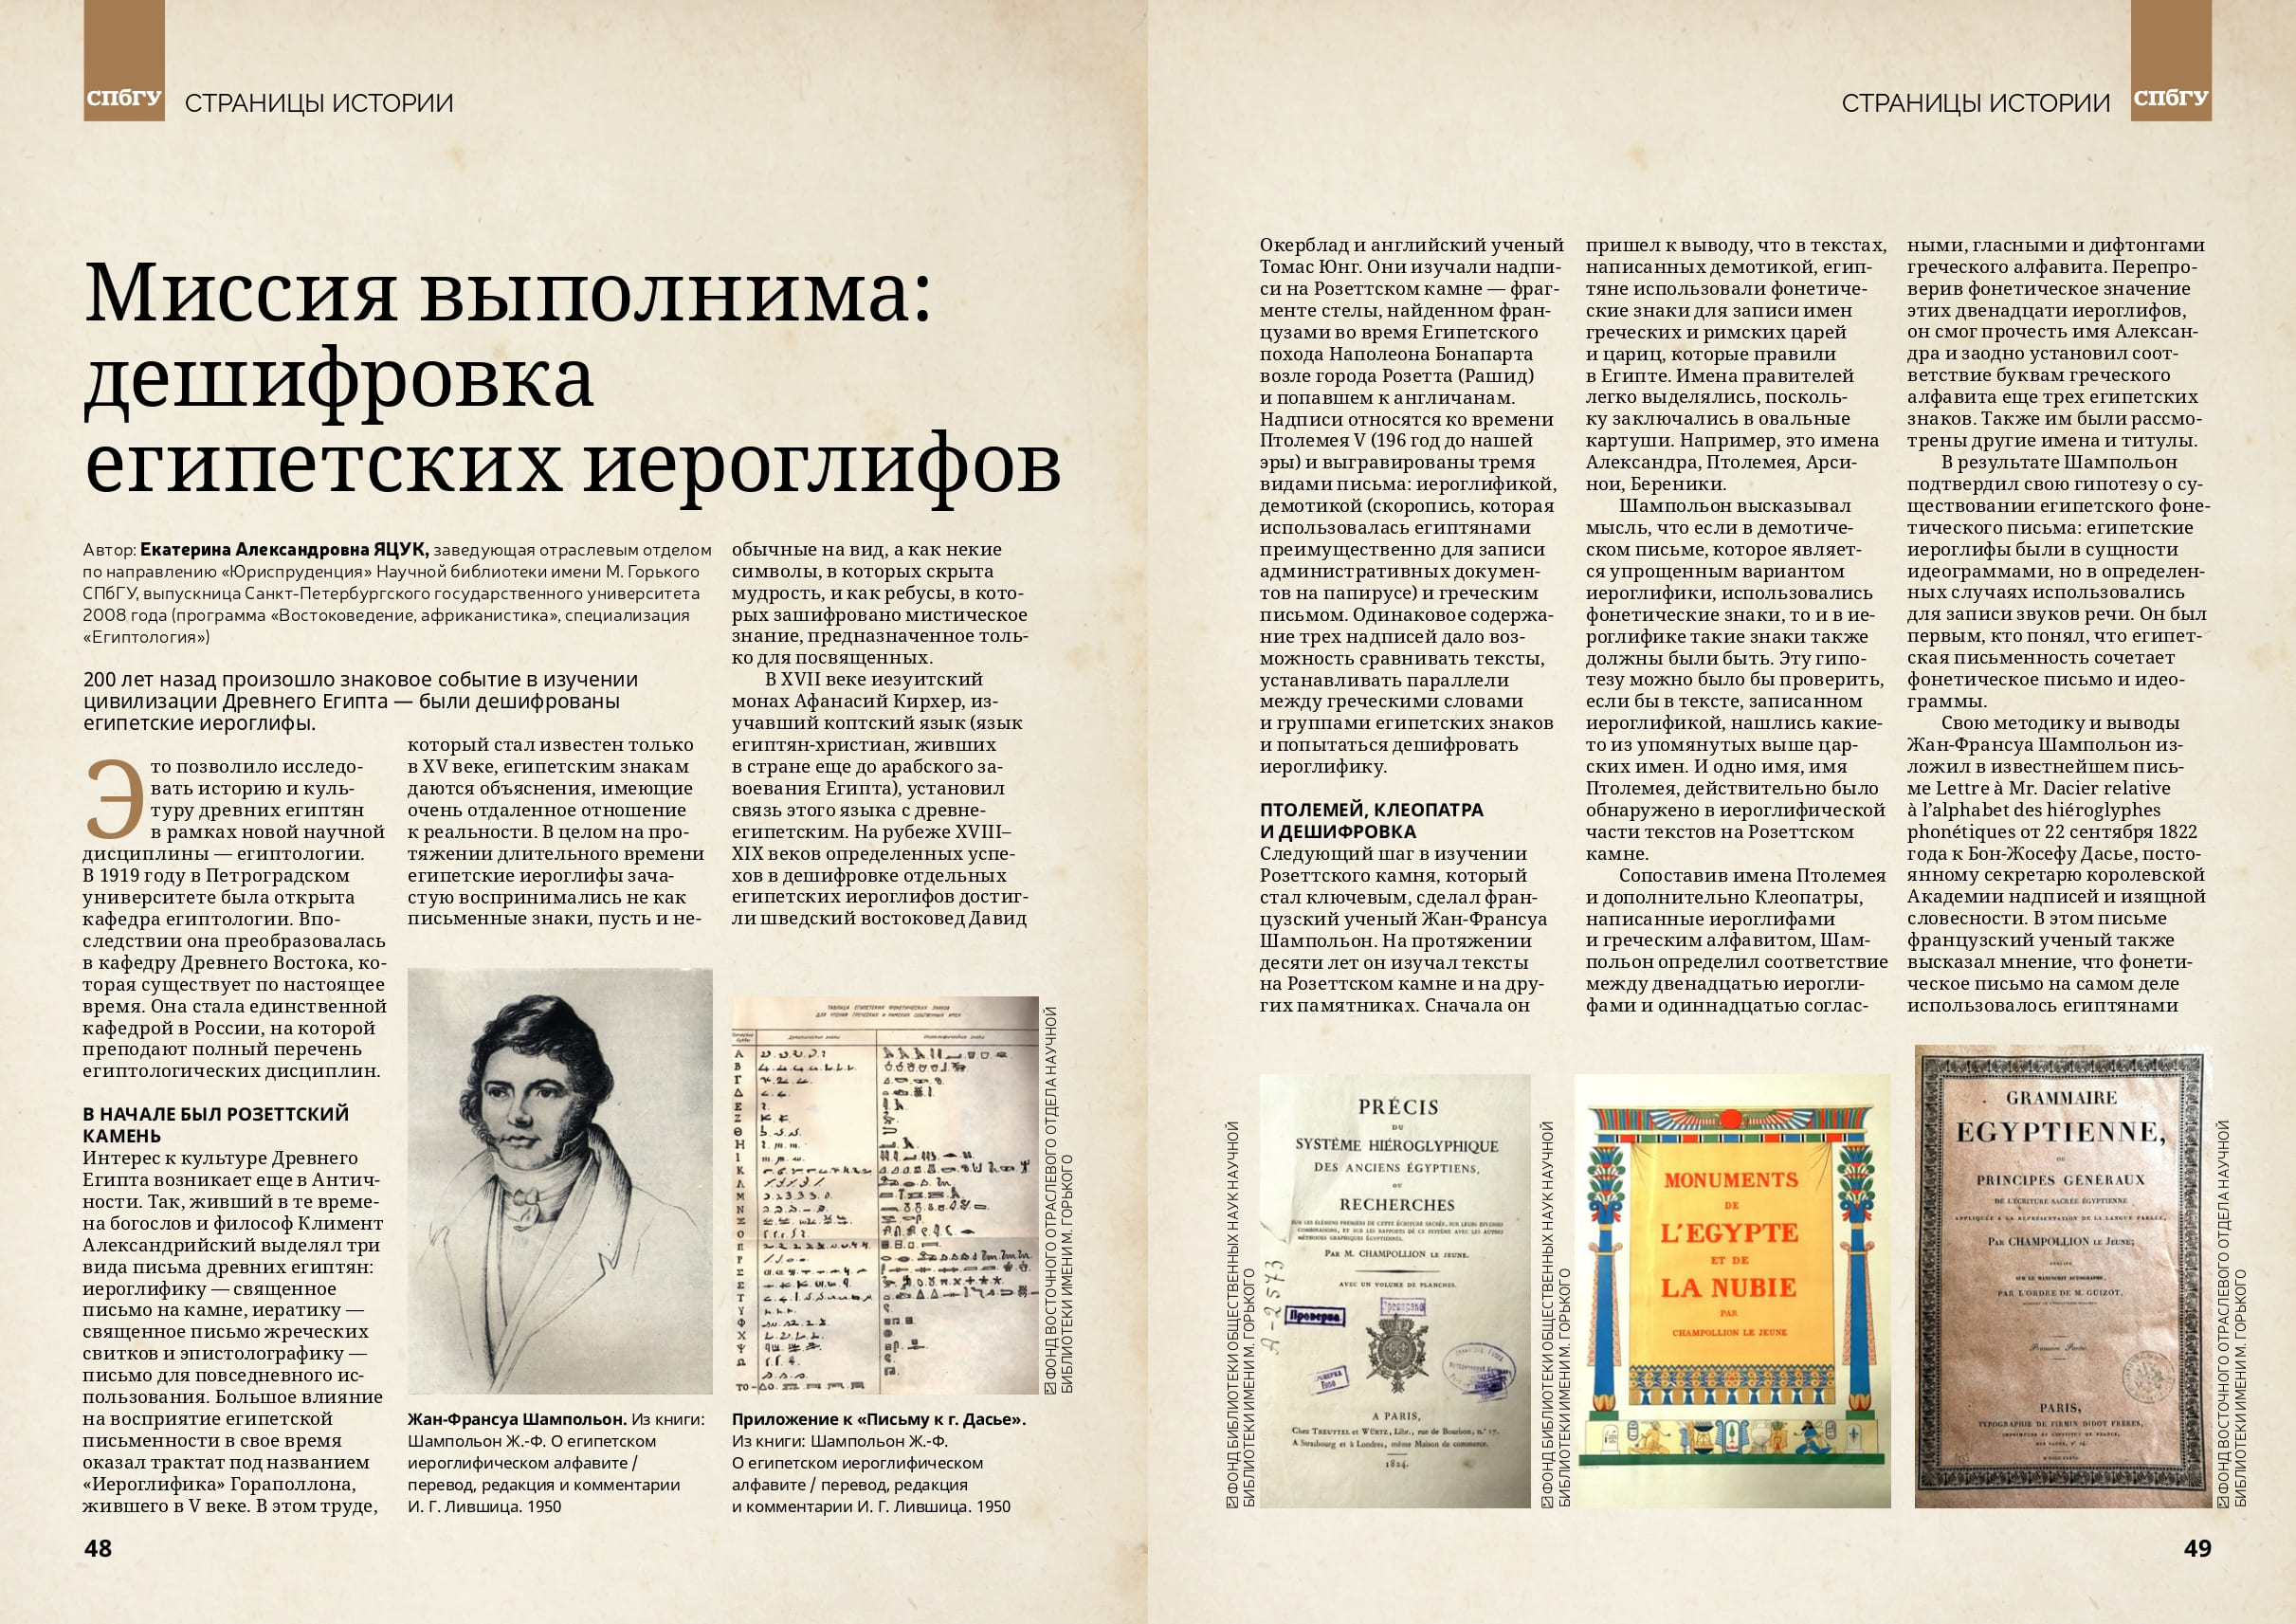 Вышел новый номер журнала «Санкт-Петербургский университет» №5 2022